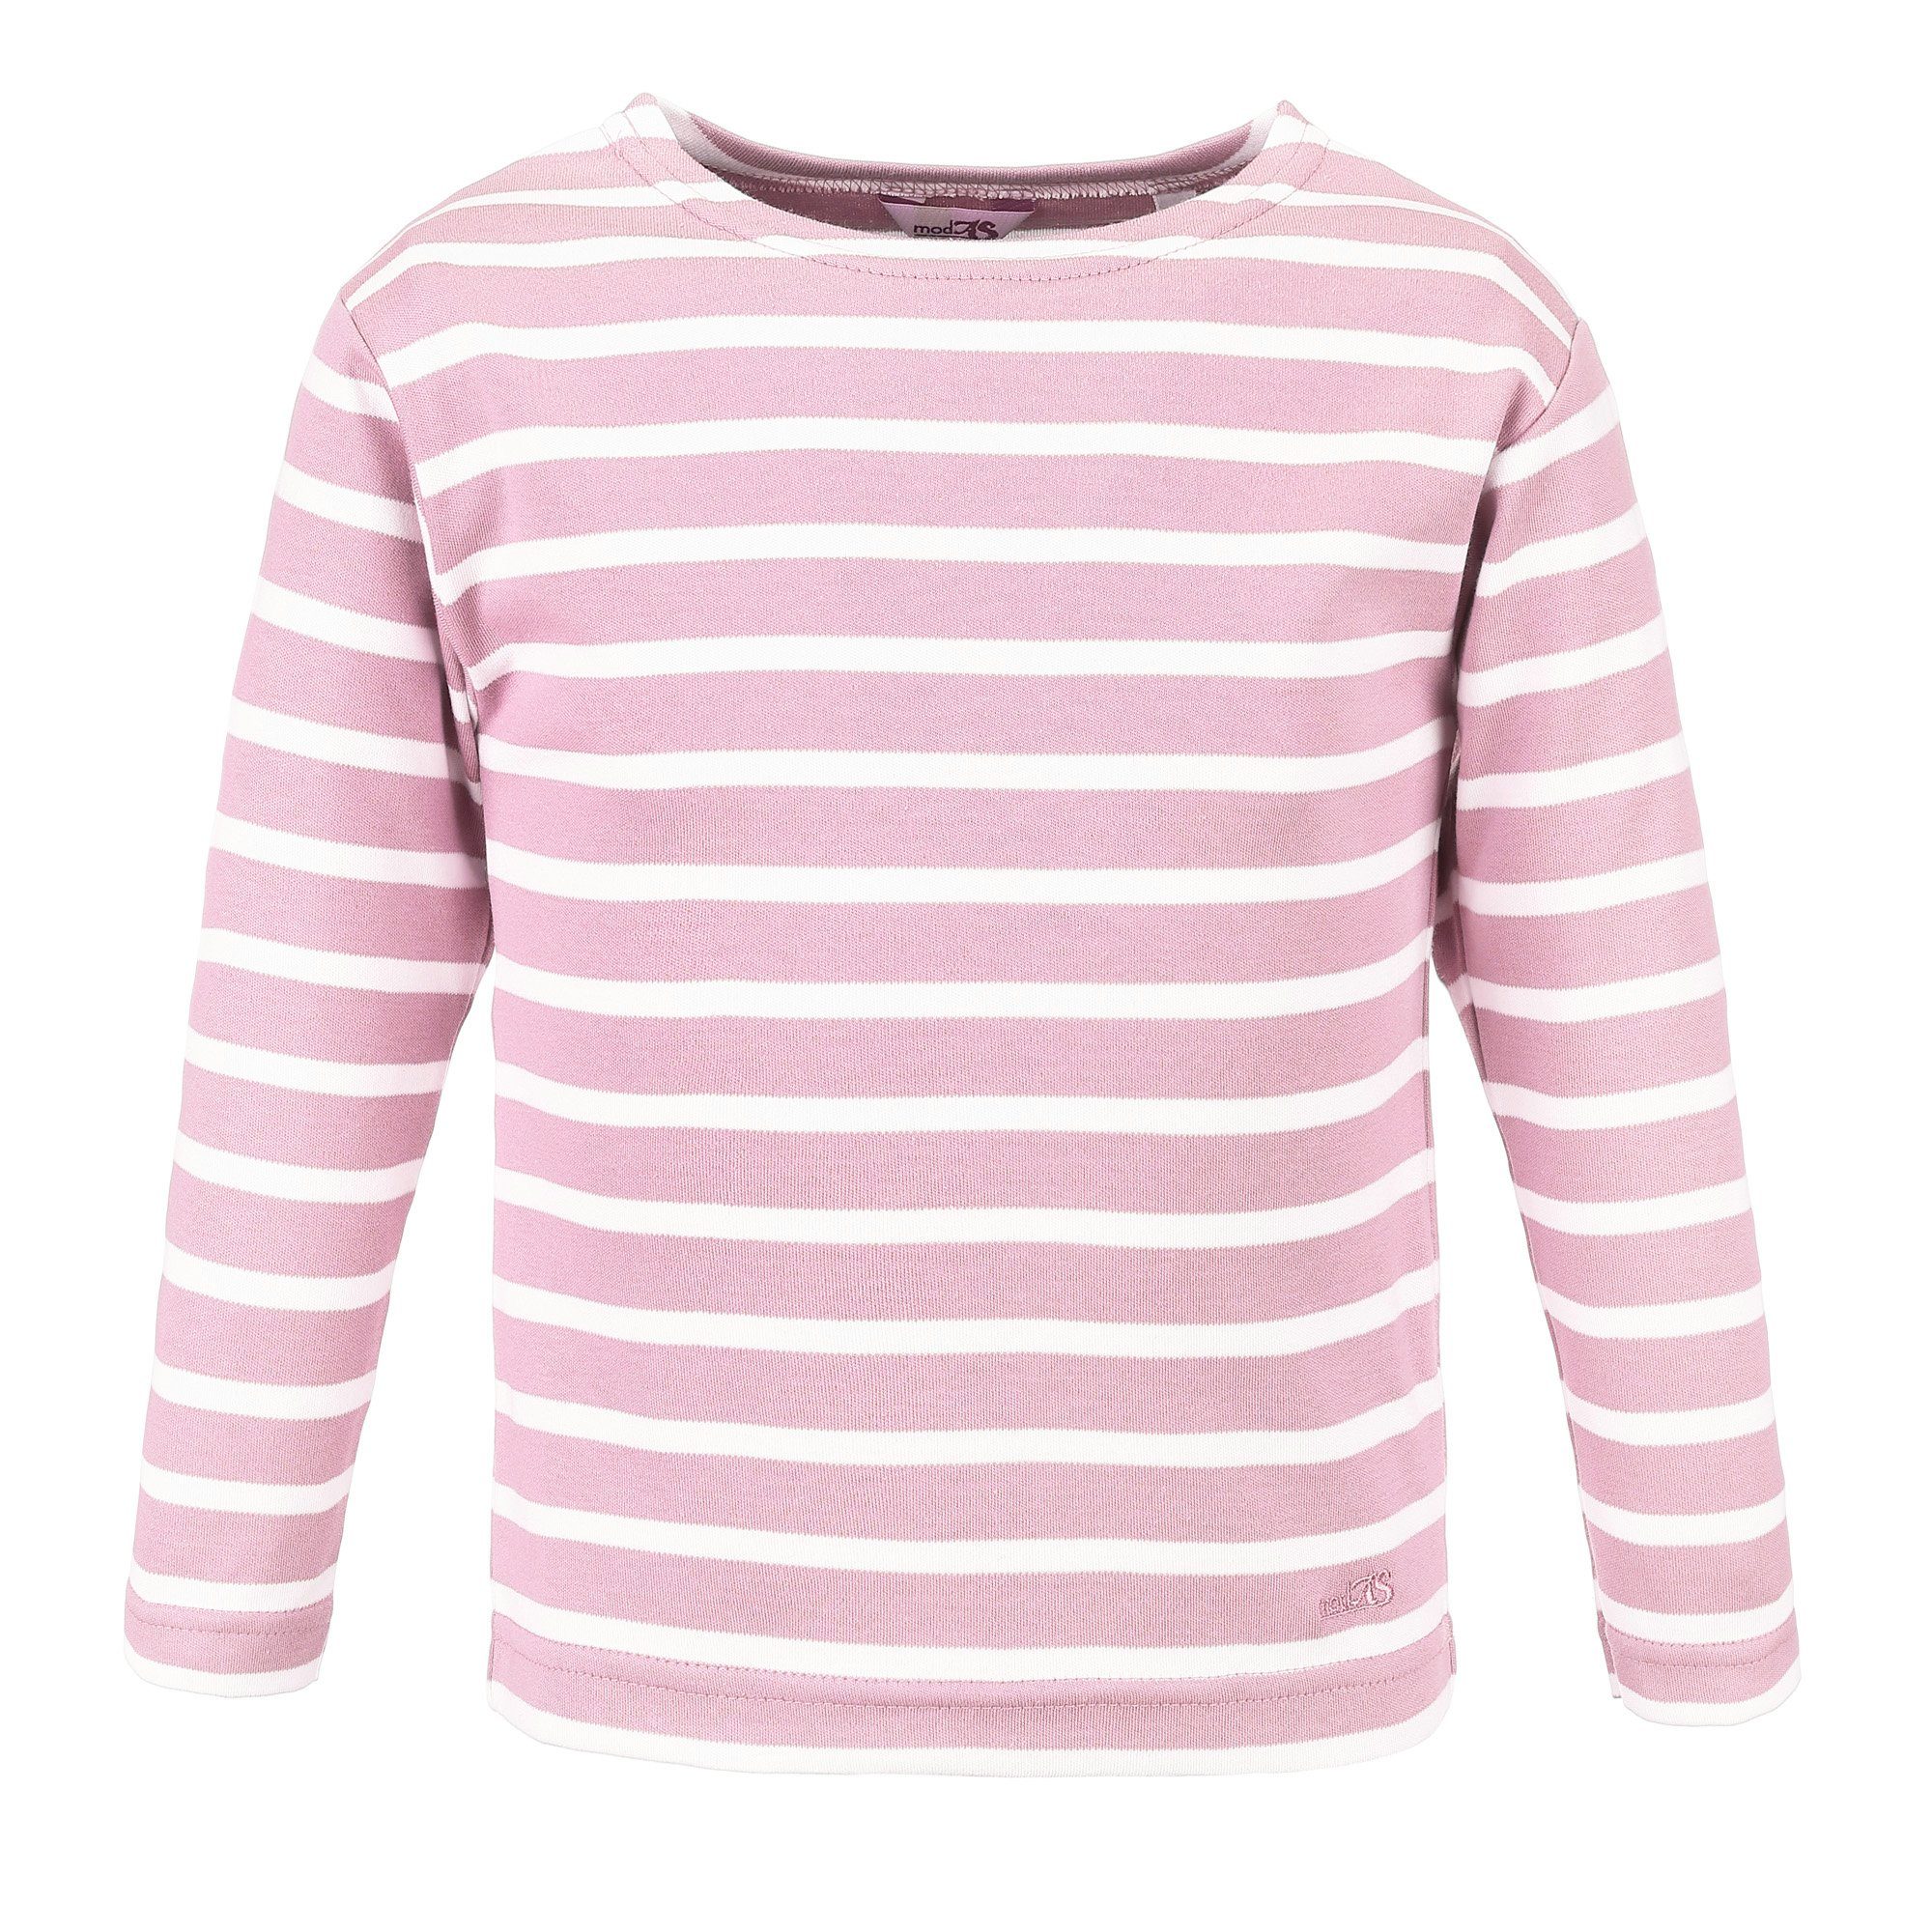 mit Jungen (14) Langarmshirt Longsleeve rosa Streifen weiß modAS Shirt / Mädchen Kinder Bretonisches für